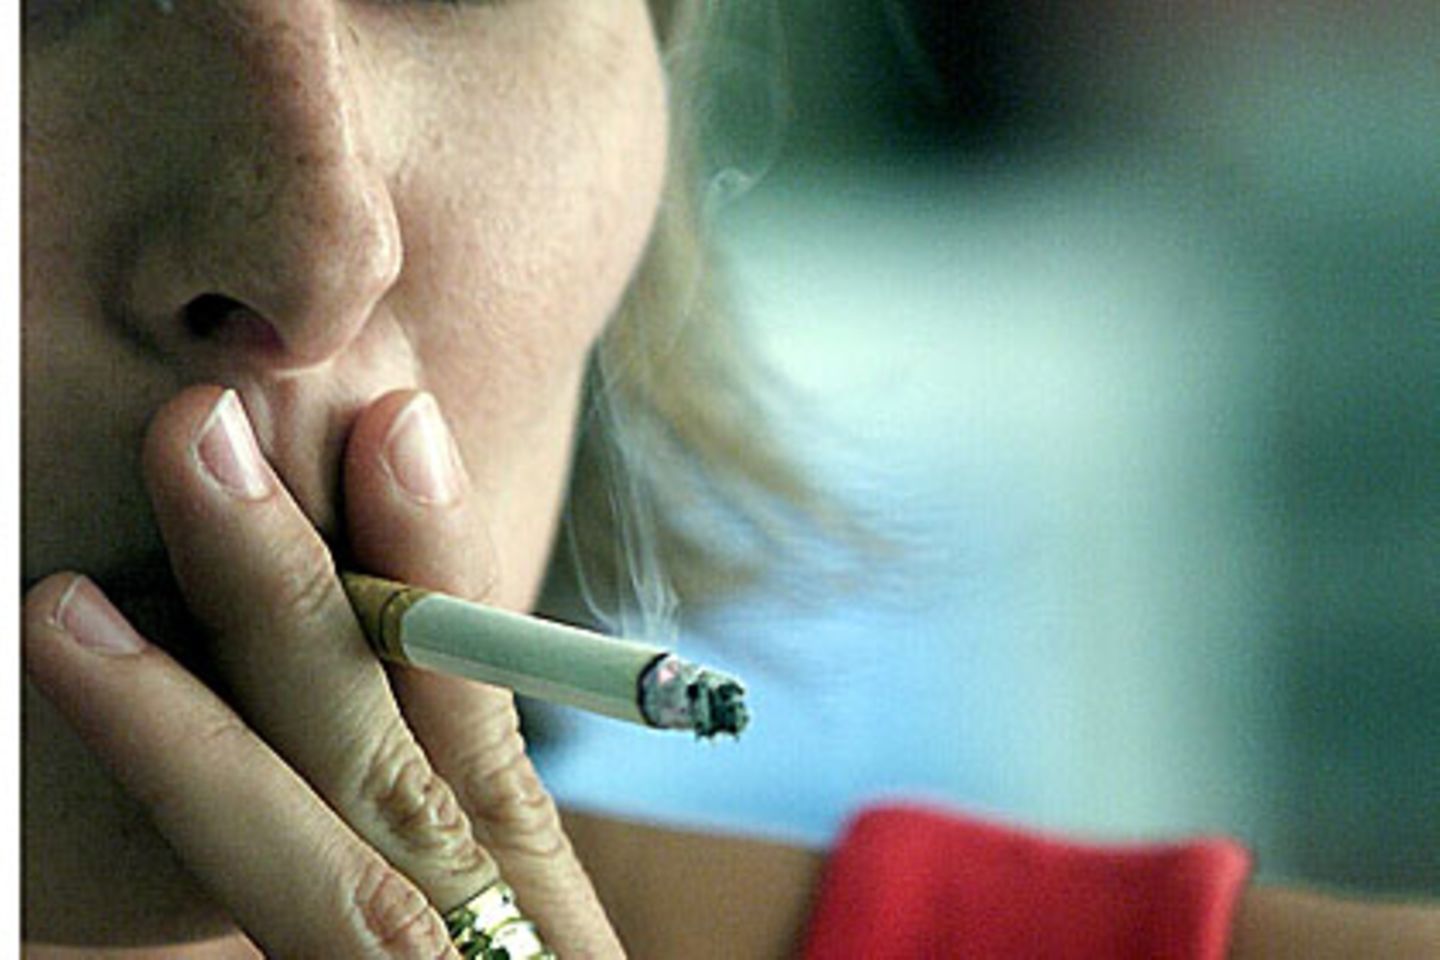 Zusatzstoffe wie Menthol sollen Zigaretten schmackhafter werden lassen